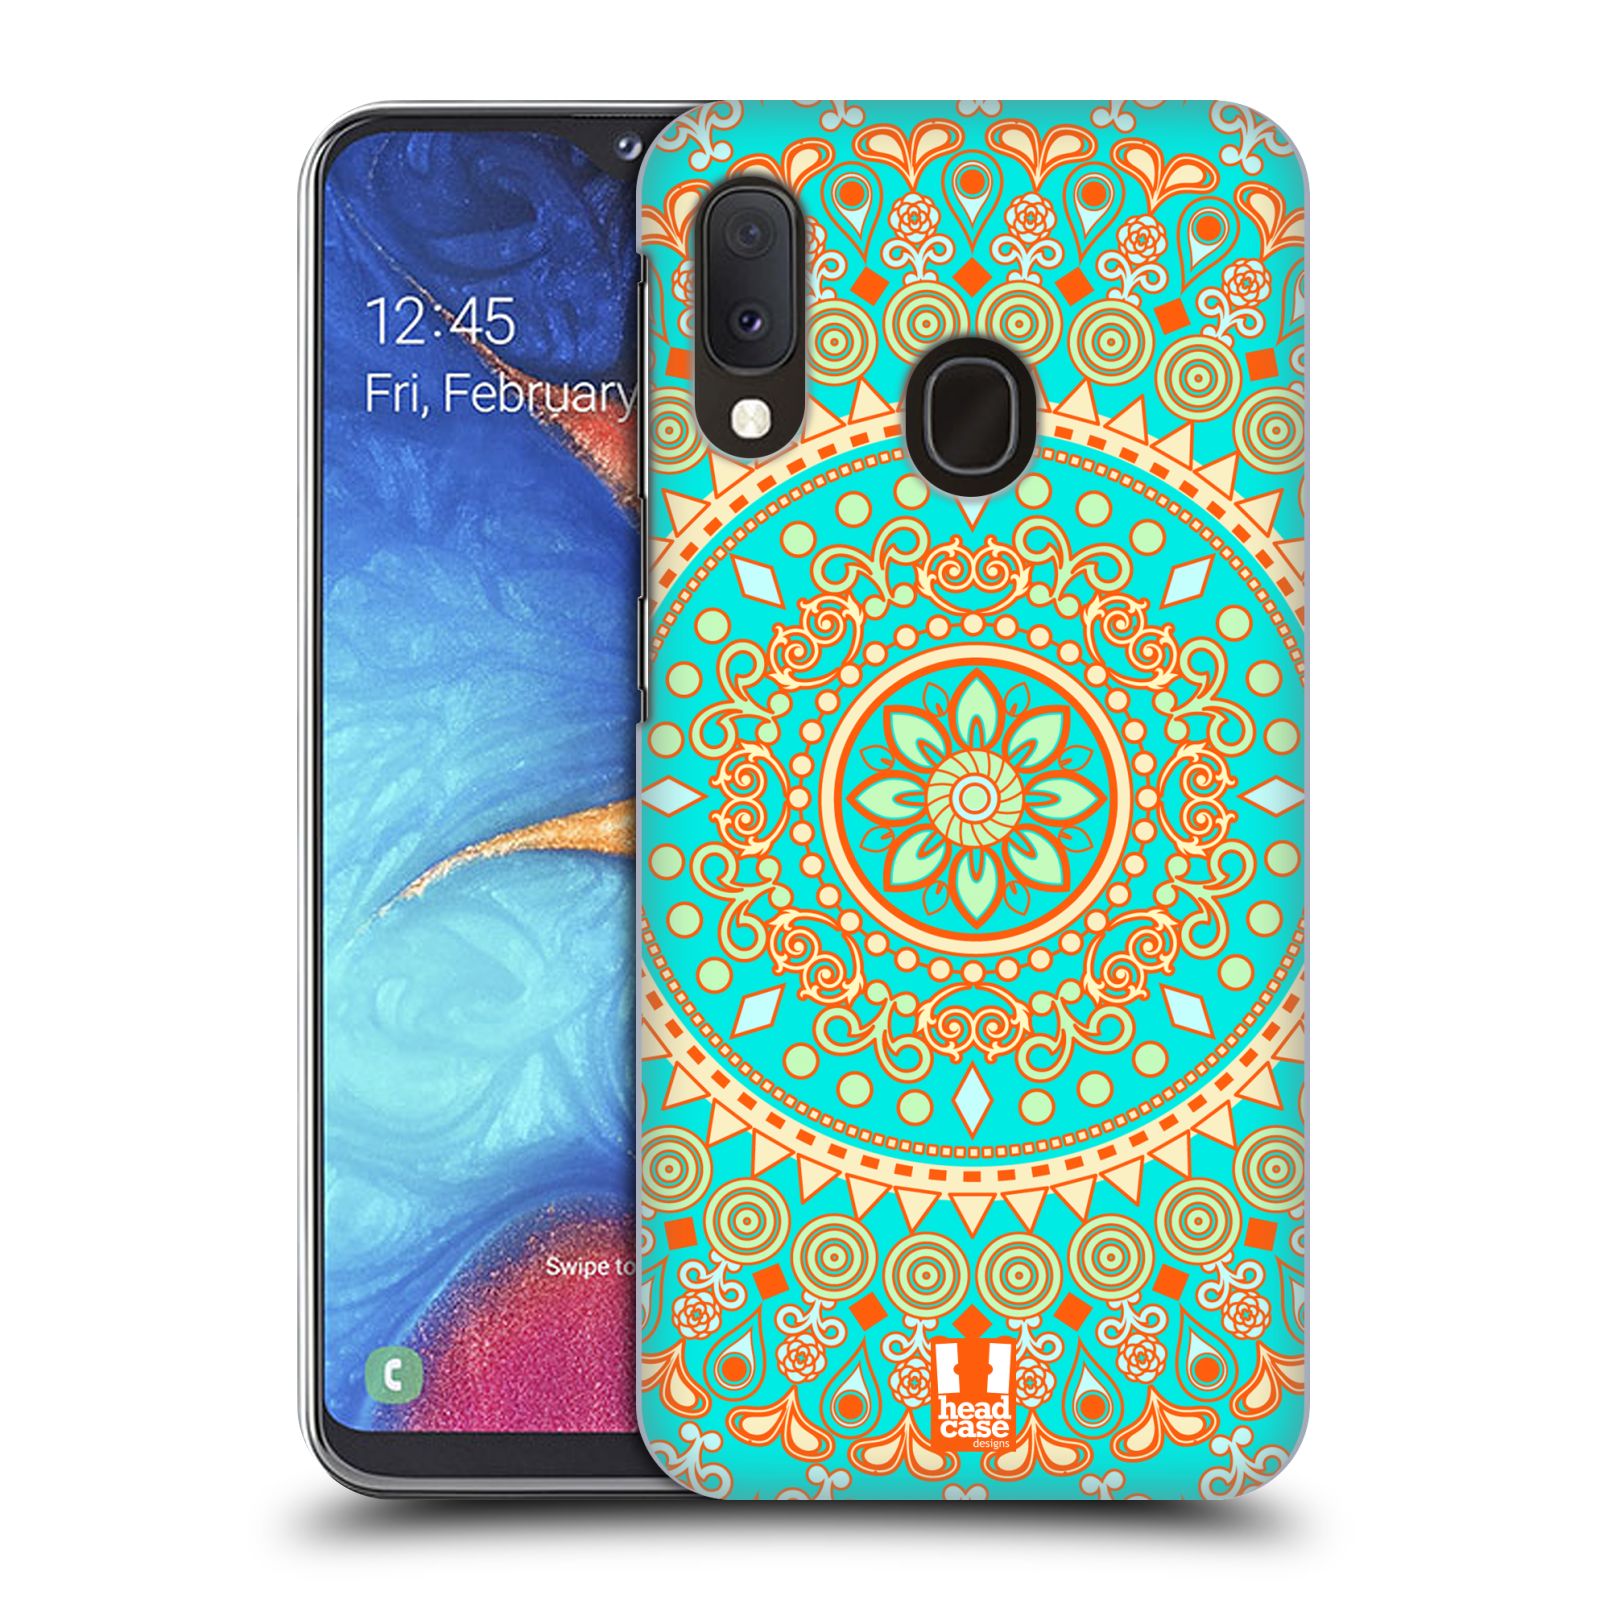 Pouzdro na mobil Samsung Galaxy A20e - HEAD CASE - vzor Indie Mandala slunce barevný motiv TYRKYSOVÁ, ZELENÁ